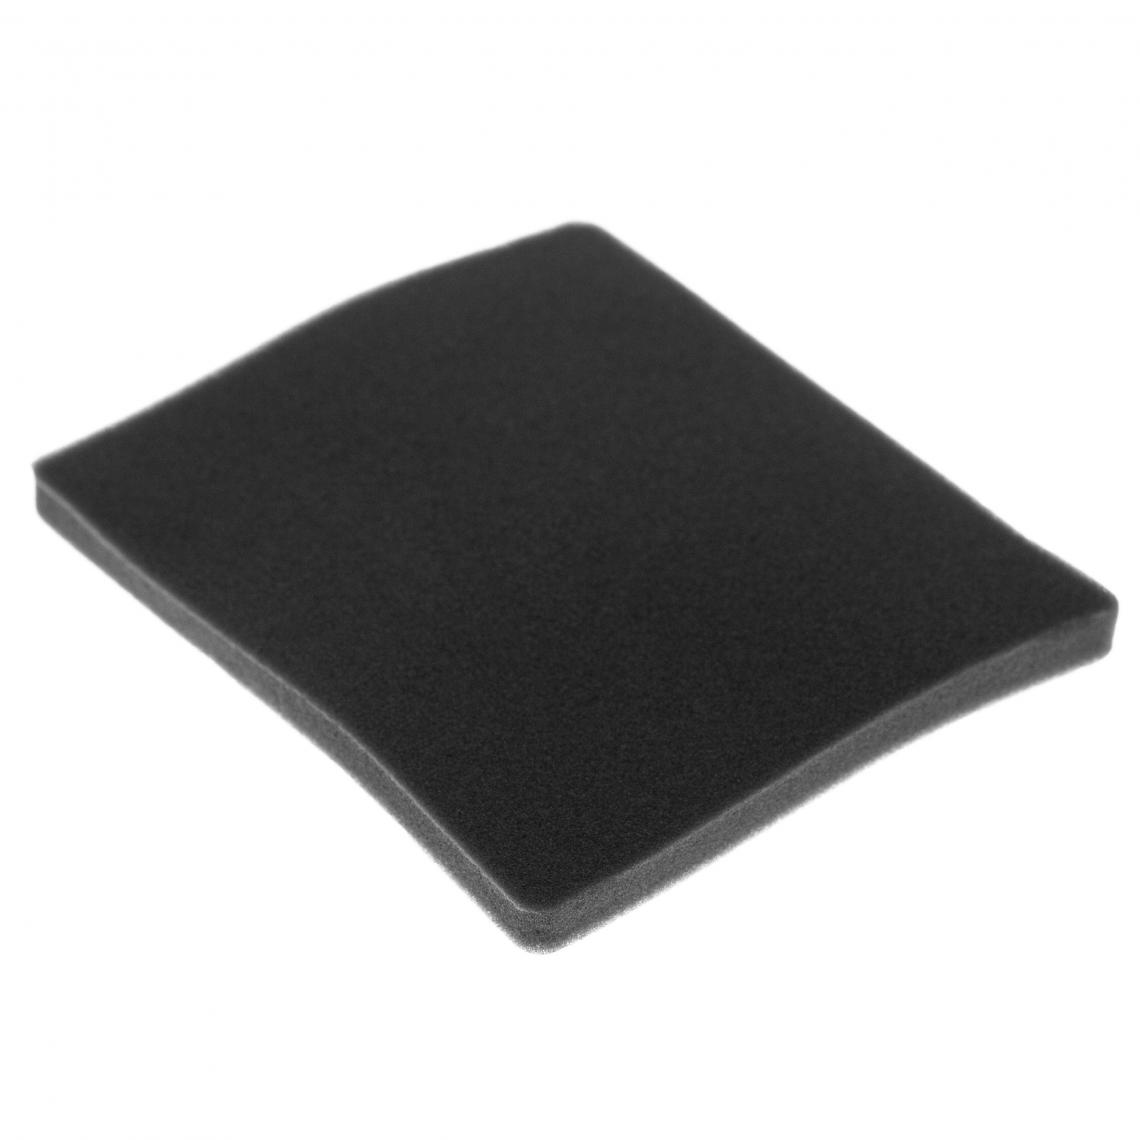 Vhbw - vhbw Filtre compatible avec Electrolux ZAM6103 (910286662) aspirateur - filtre de sortie d'air (filtre éponge), noir - Accessoire entretien des sols